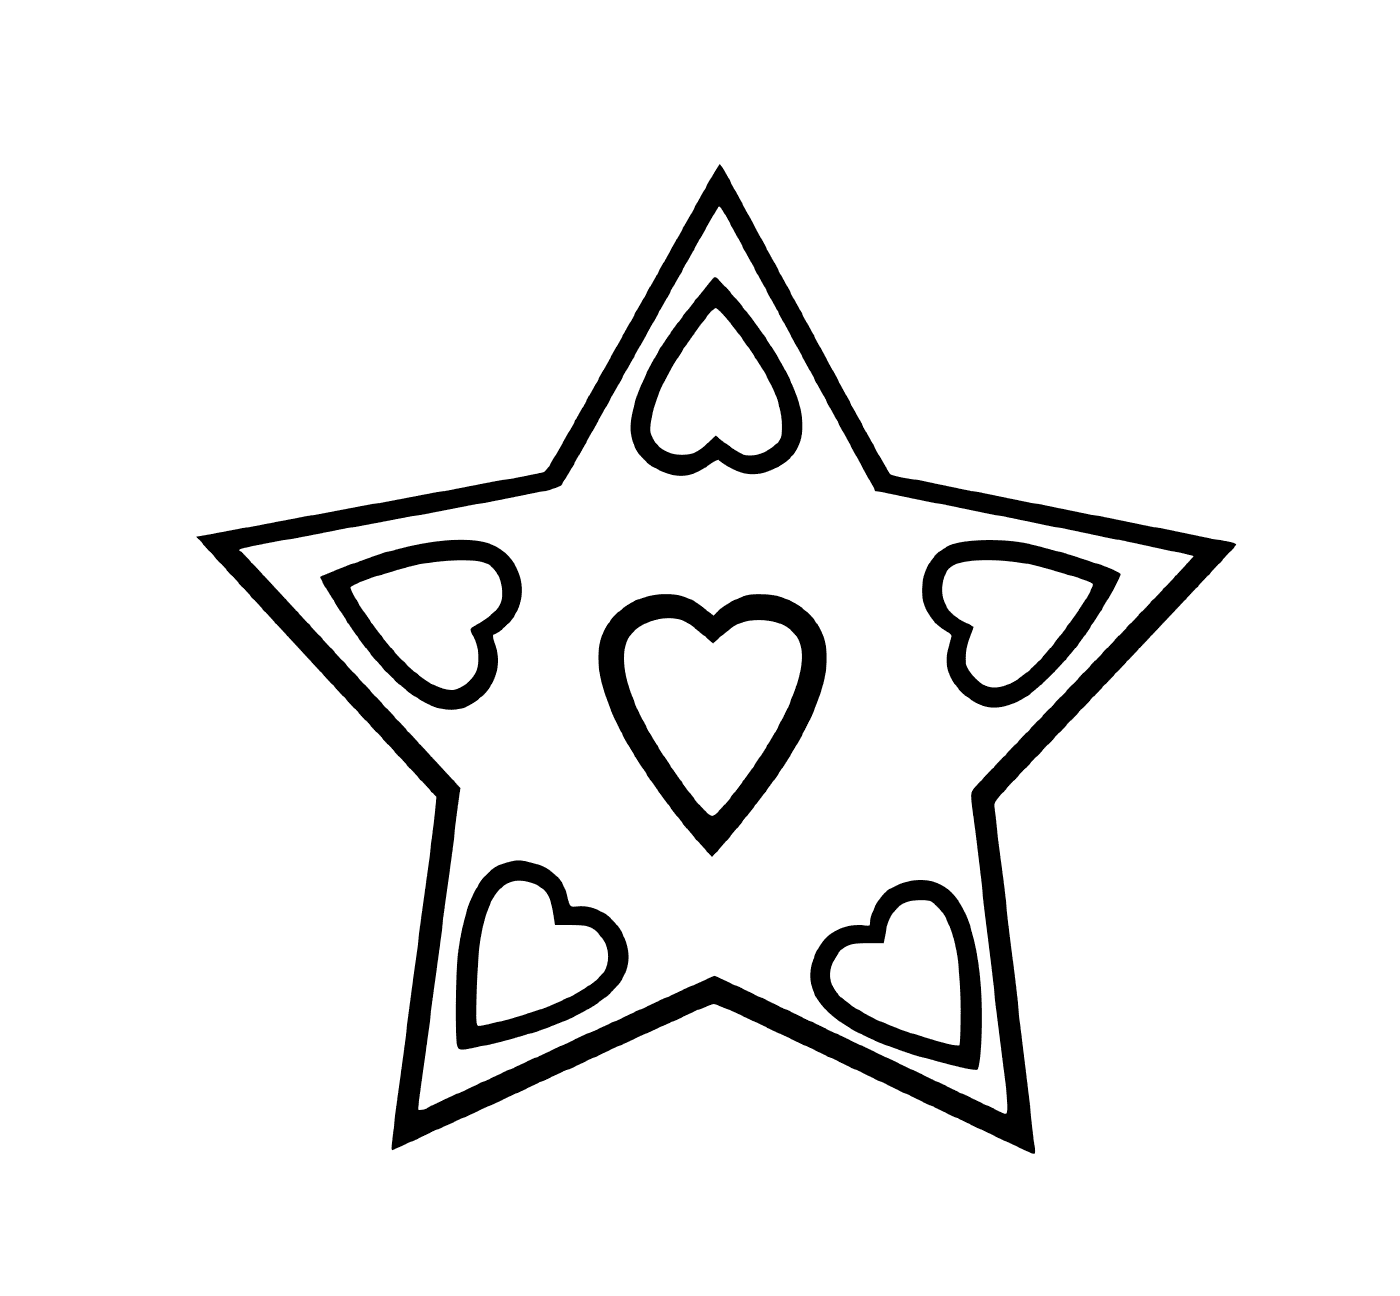   Une étoile entourée de cœurs 